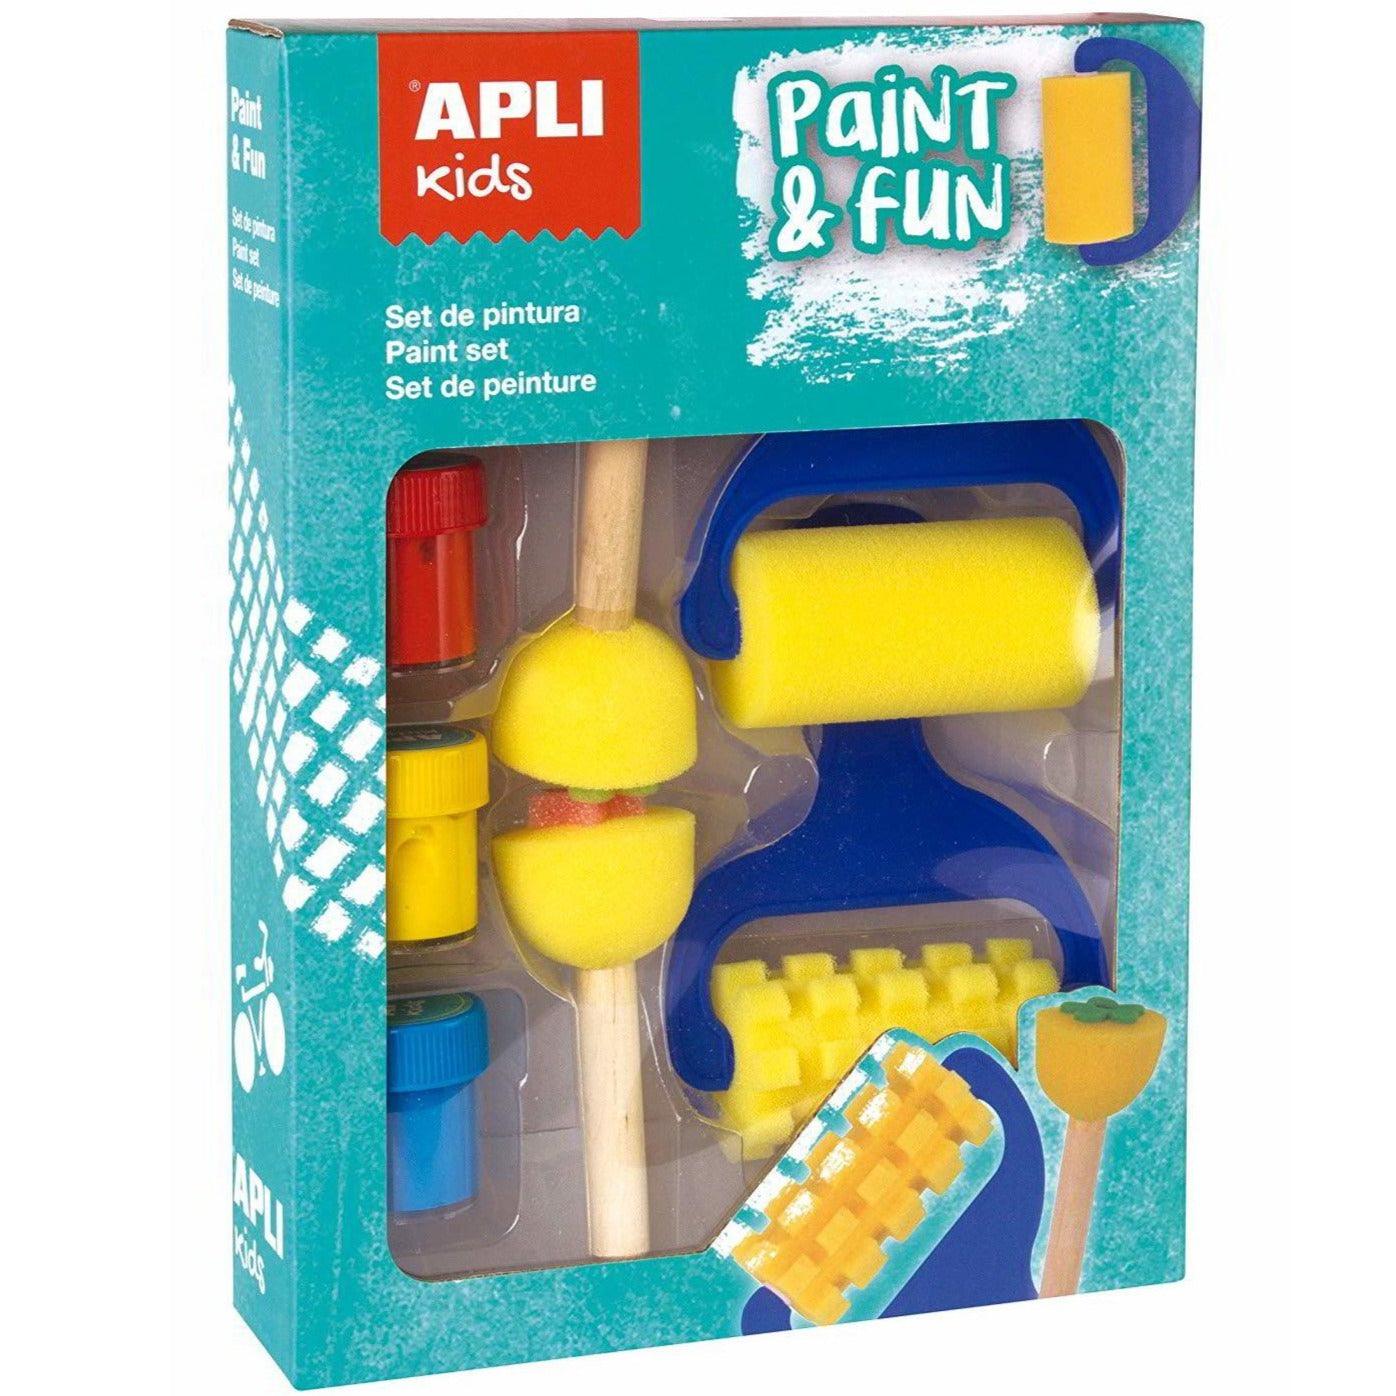 Apli Kids: tinta e selos divertidos e rolos de pintura